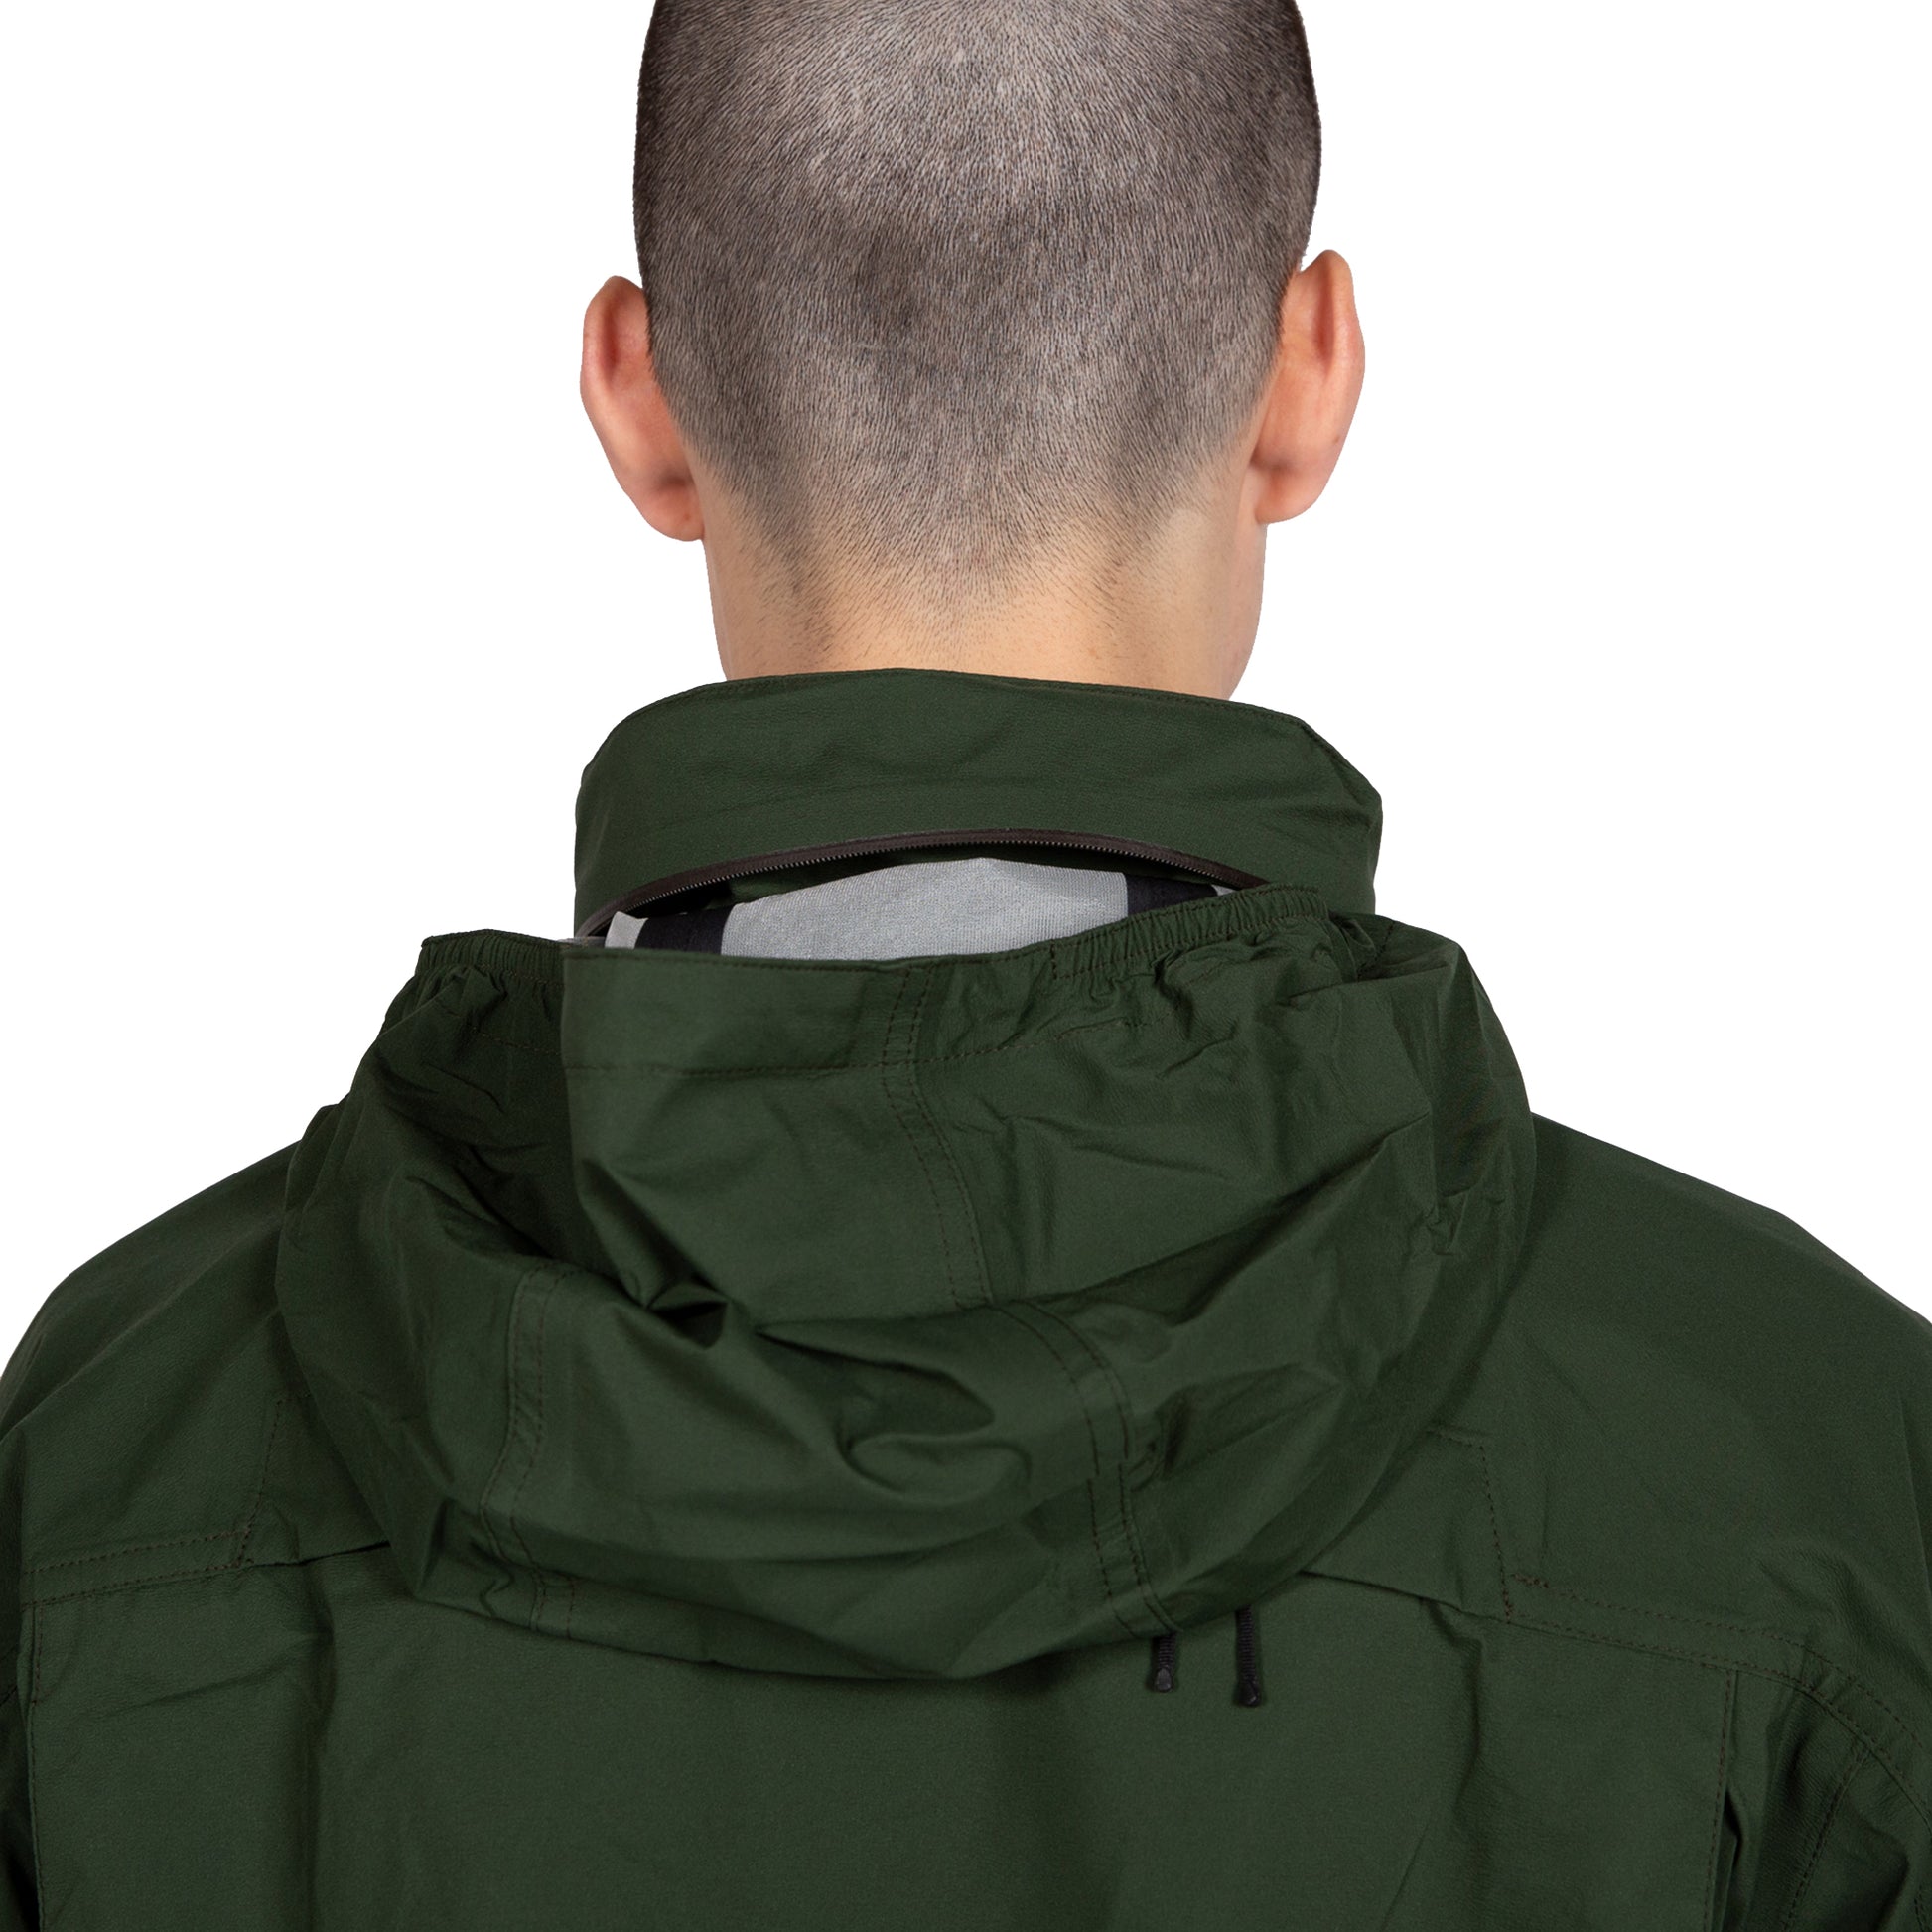 Goldwin Traveler Blouson in Cypress Green Outerwear sportwear hooded hood rain gear all weather